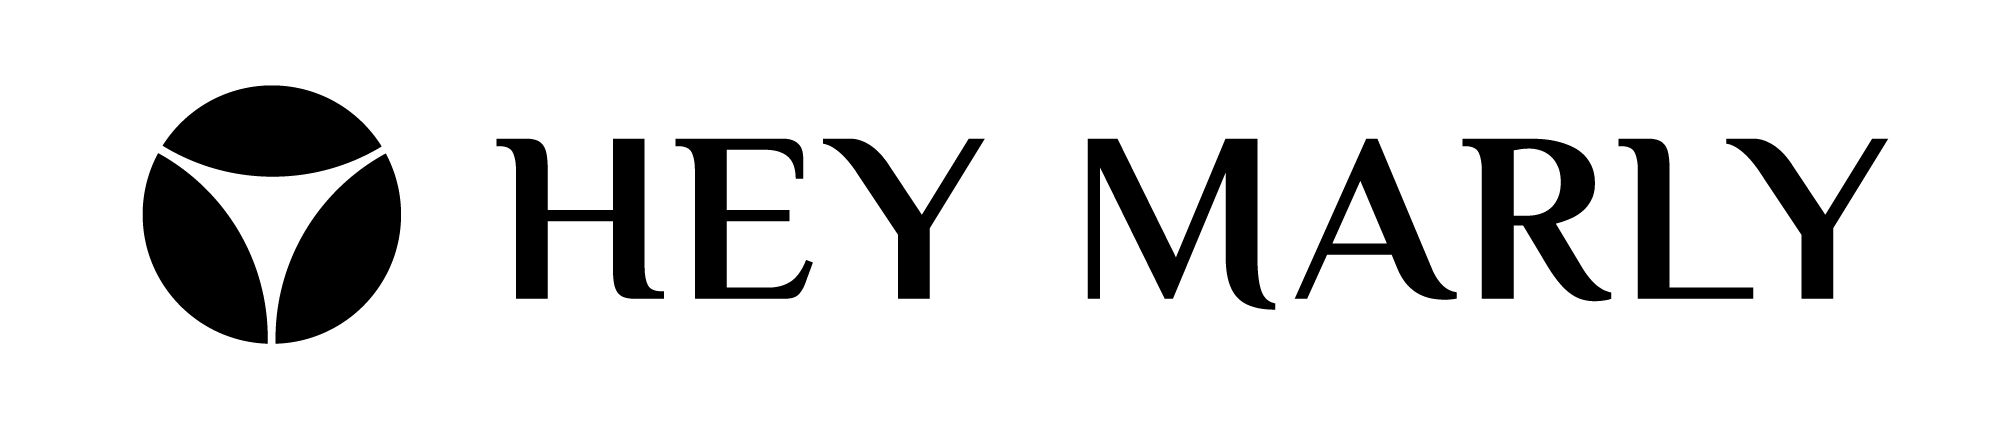 Hey Marly  logo